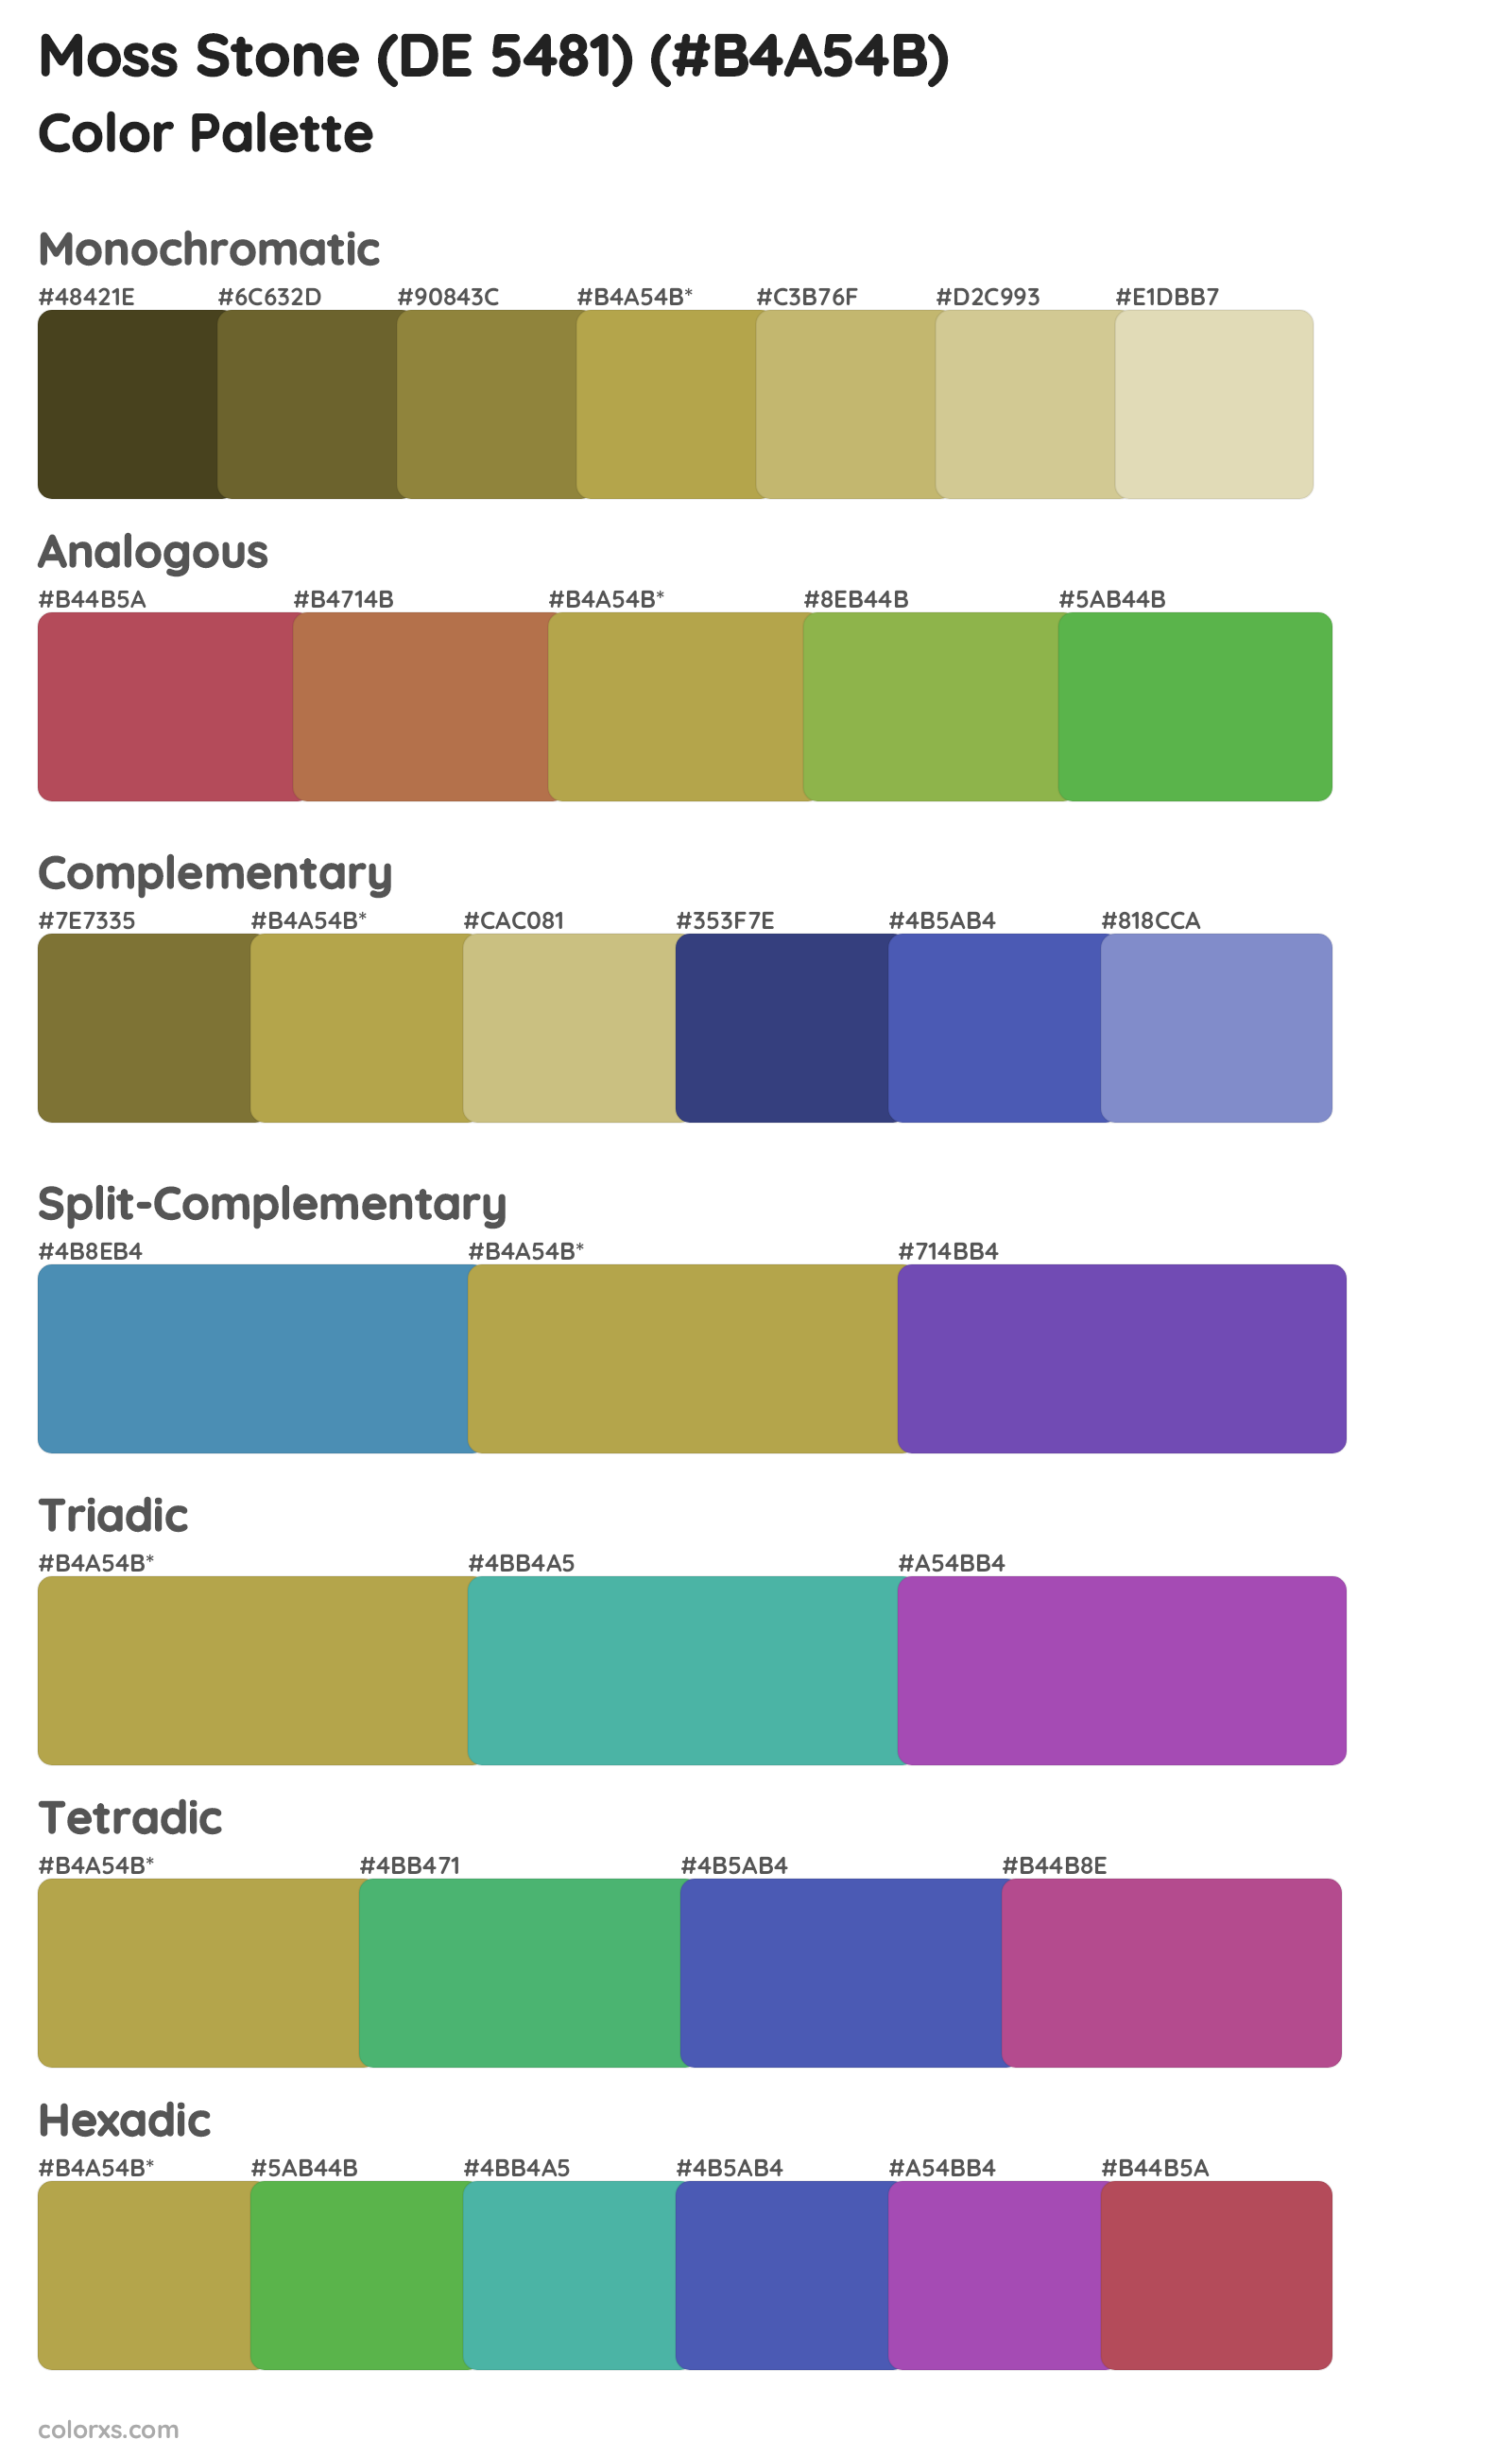 Moss Stone (DE 5481) Color Scheme Palettes